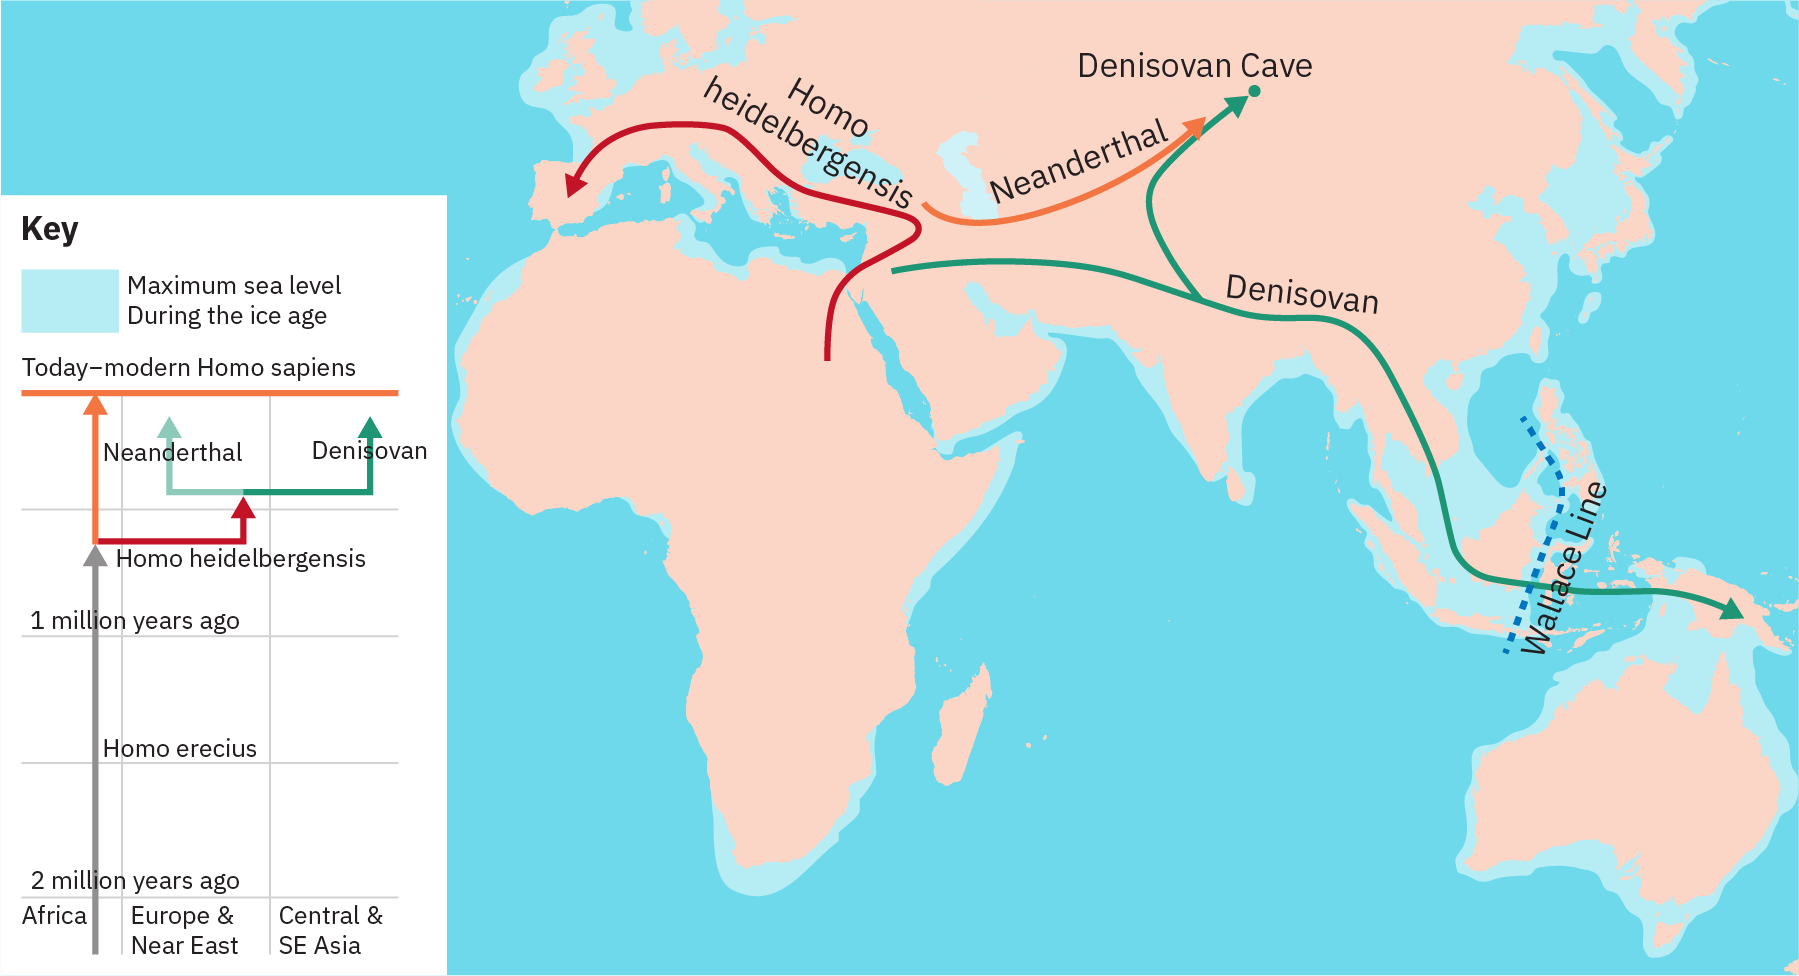 系统发育树显示了一条从200万年前一直延伸到 “当今现代智人” 的线条。 远离那条线的是 “Homo Heidelbergensis” 的台词。这条线又分成了 “尼安德特人” 和 “Denisovan” 的台词。 该地图描绘了丹尼索瓦人从中东经印度次大陆迁移到新西兰。 德尼索万道路上的一条分支通向俄罗斯。 事实证明，尼安德特人已经从中东迁移到俄罗斯。 事实证明，Homo Heideibergensis 是从非洲迁移到中东，然后迁移到欧洲，一直迁移到西班牙。